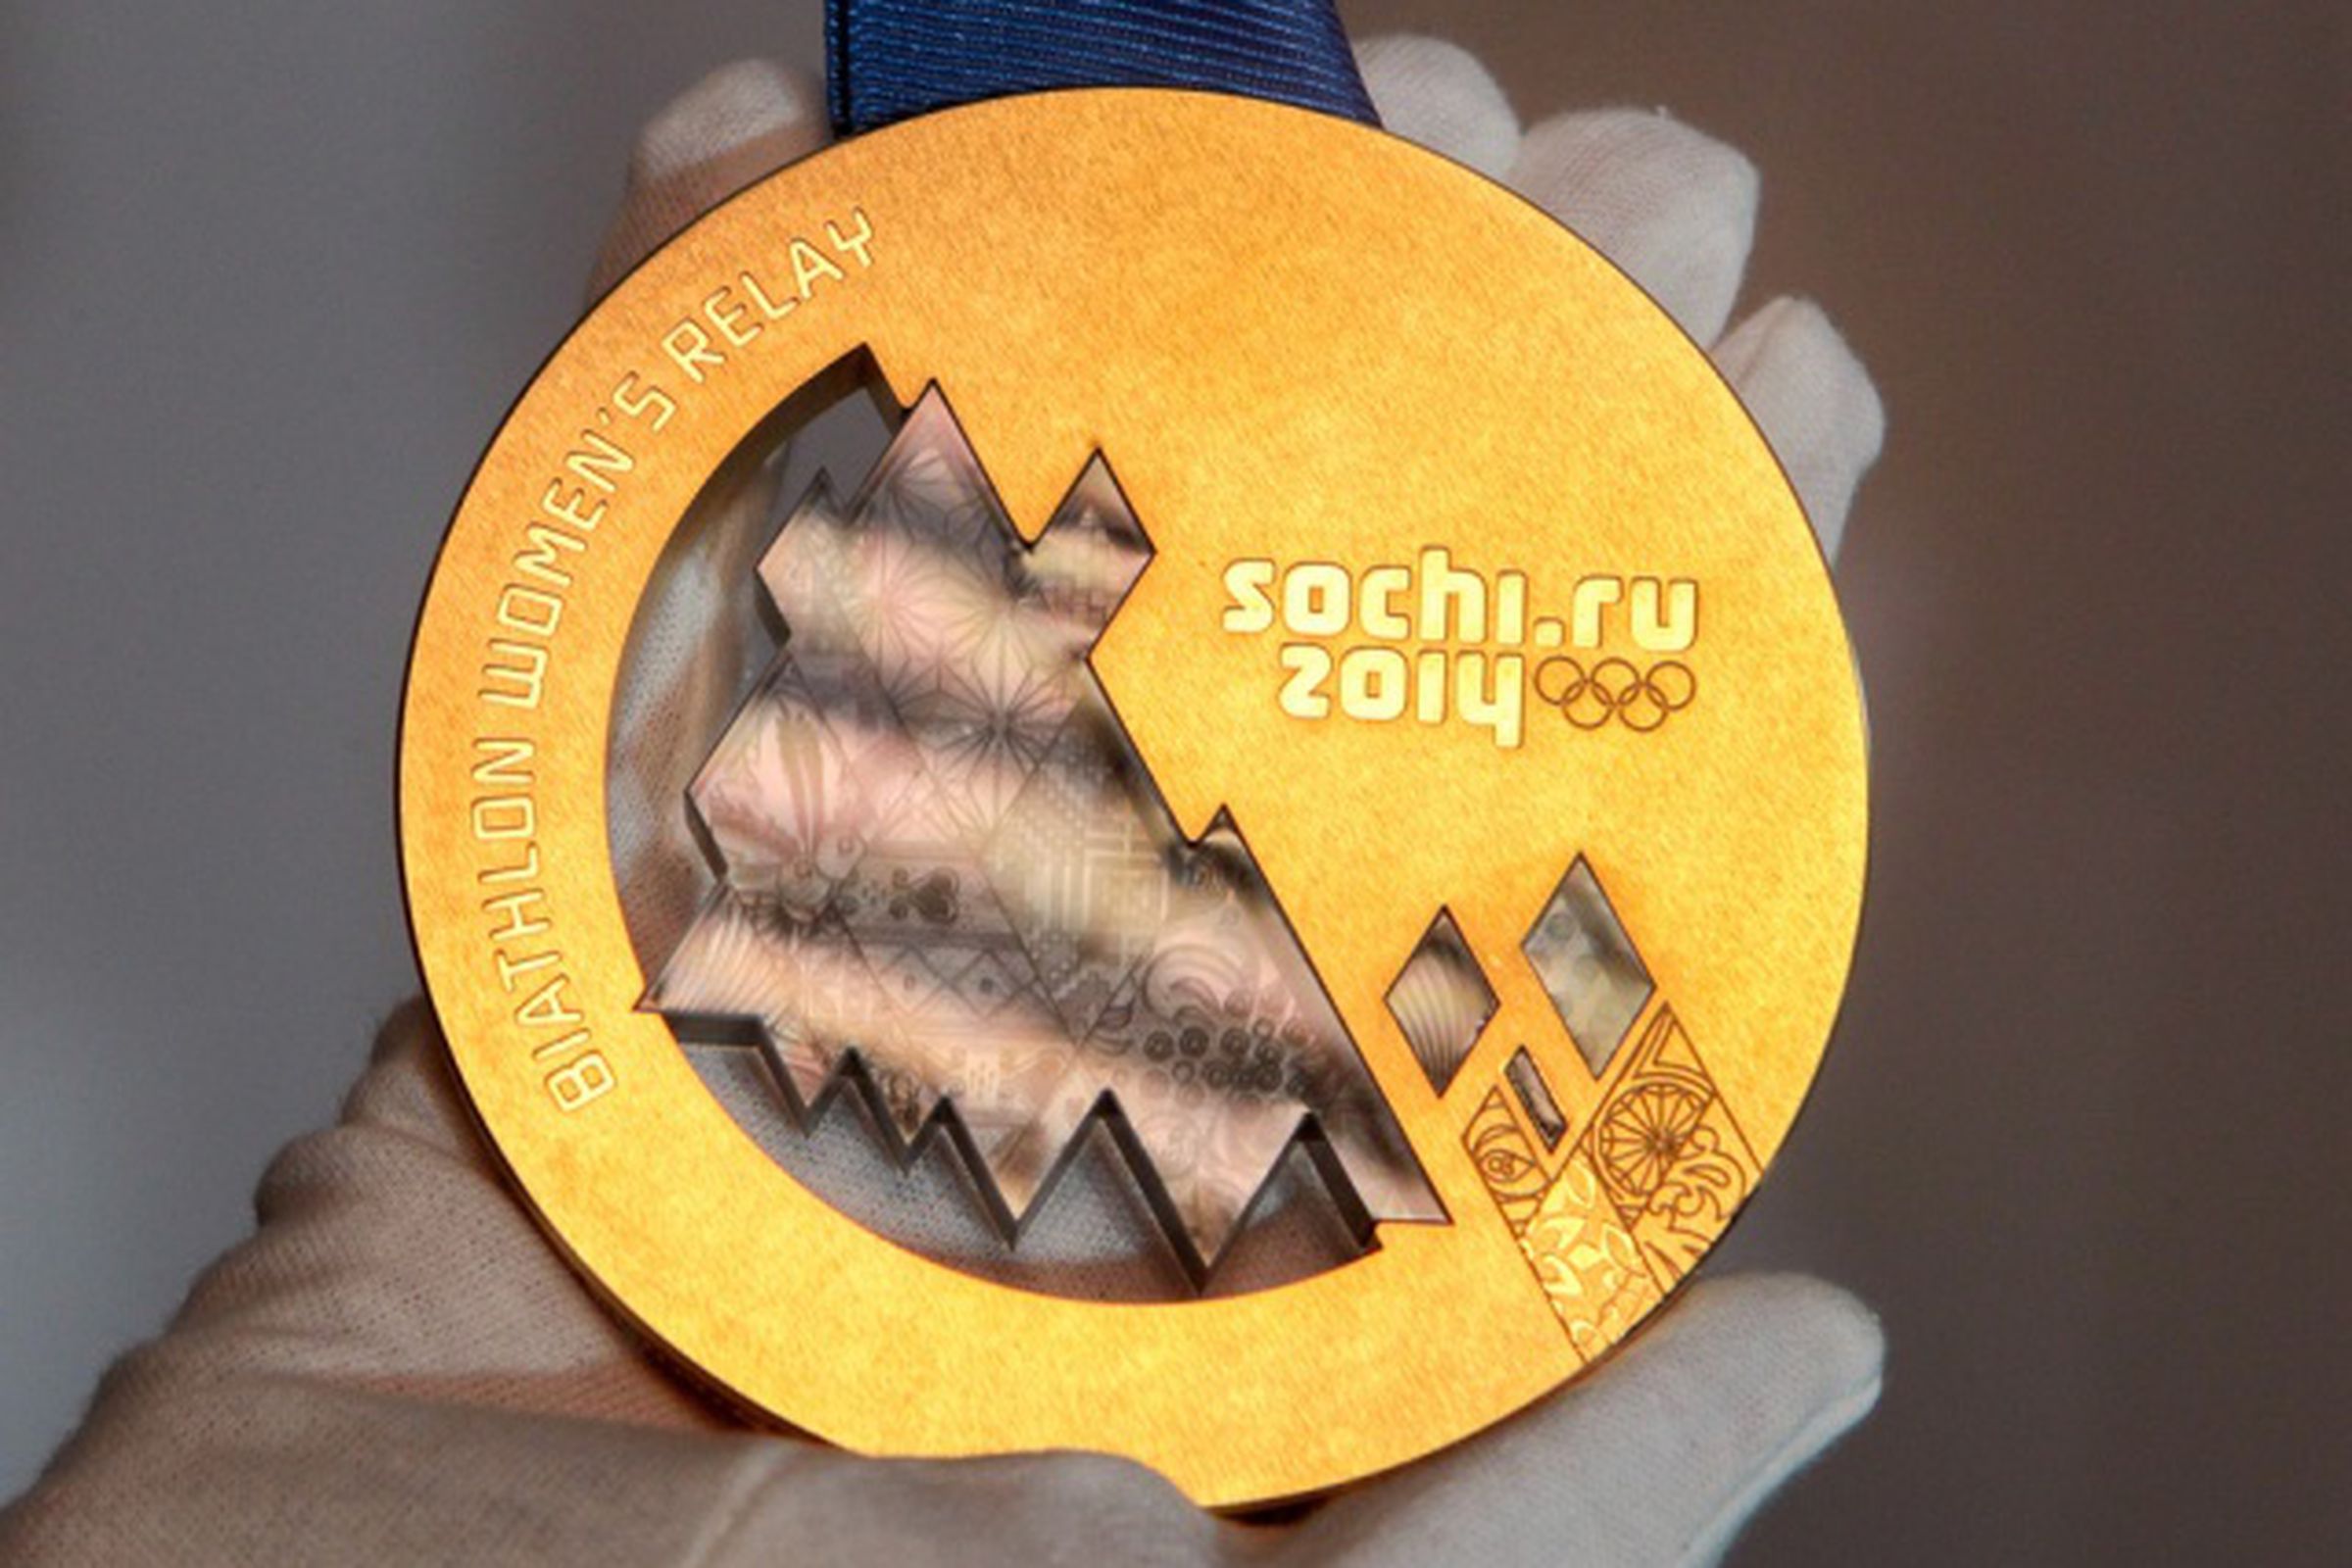 sochi 2014 winter olympics gold medal flickr